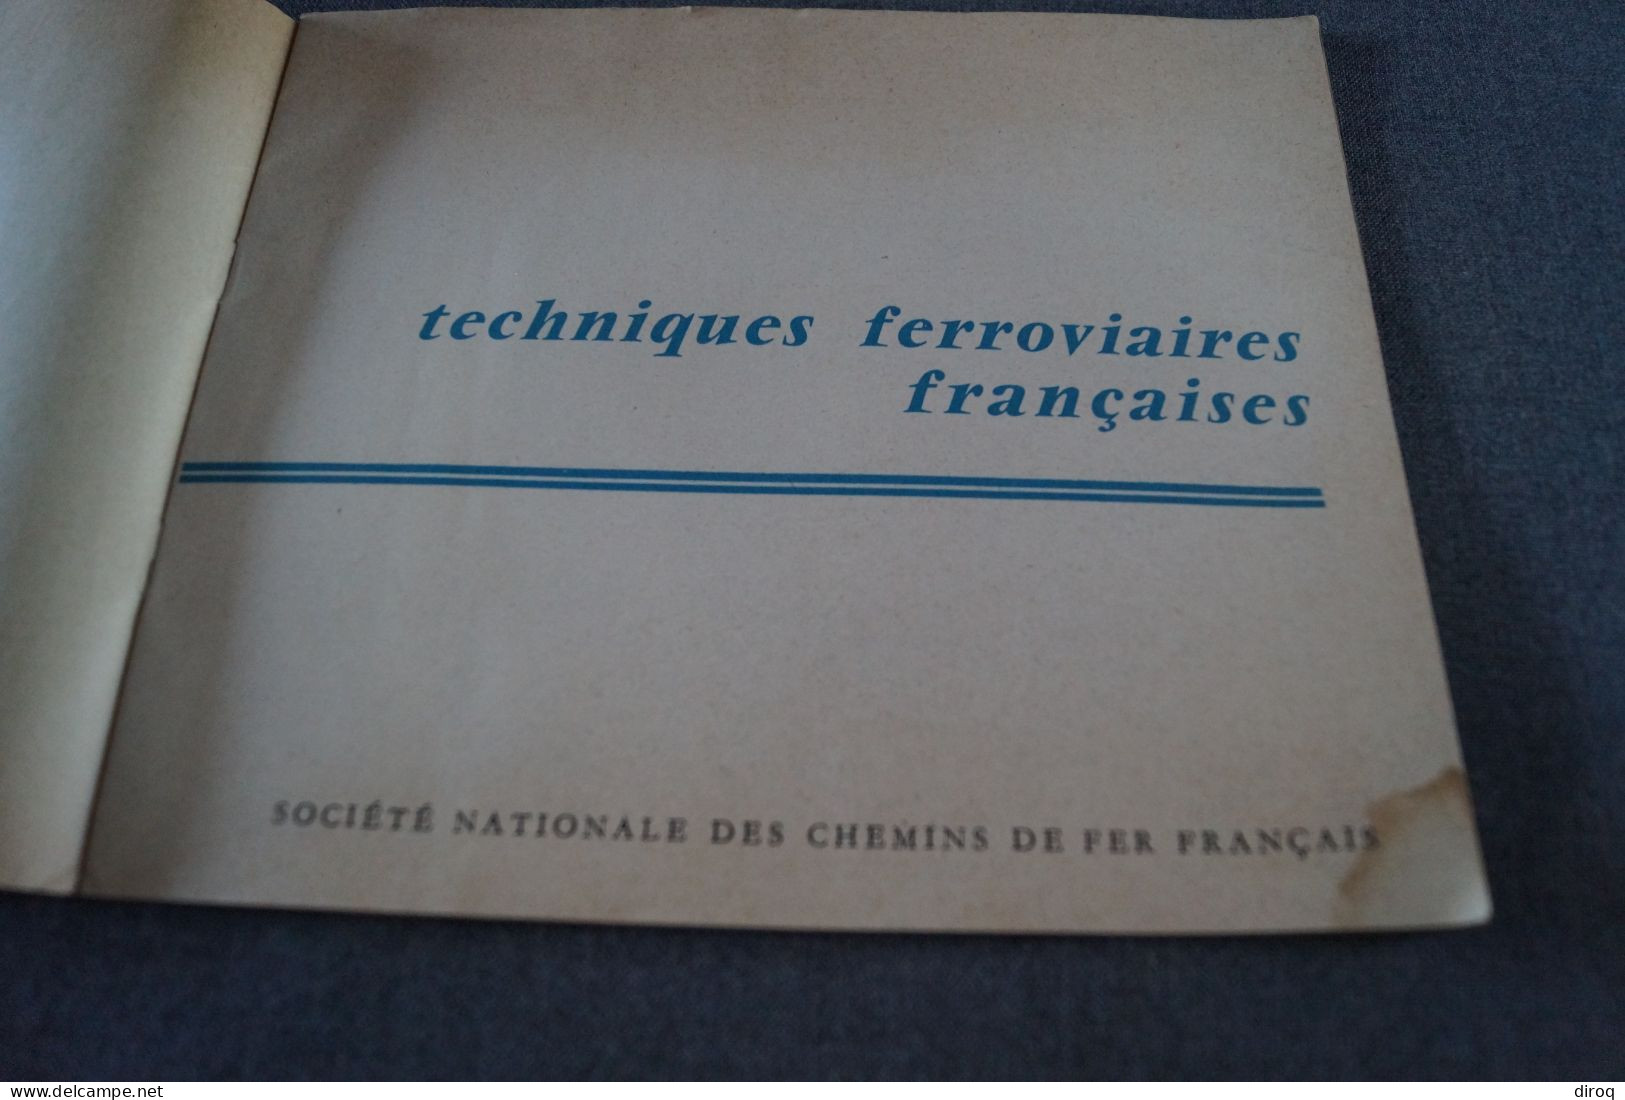 Expo 1958, Bruxelles,publicitaire,LChemin De Fer Français,24 Pages,21 Cm. Sur 18 Cm. - Werbung